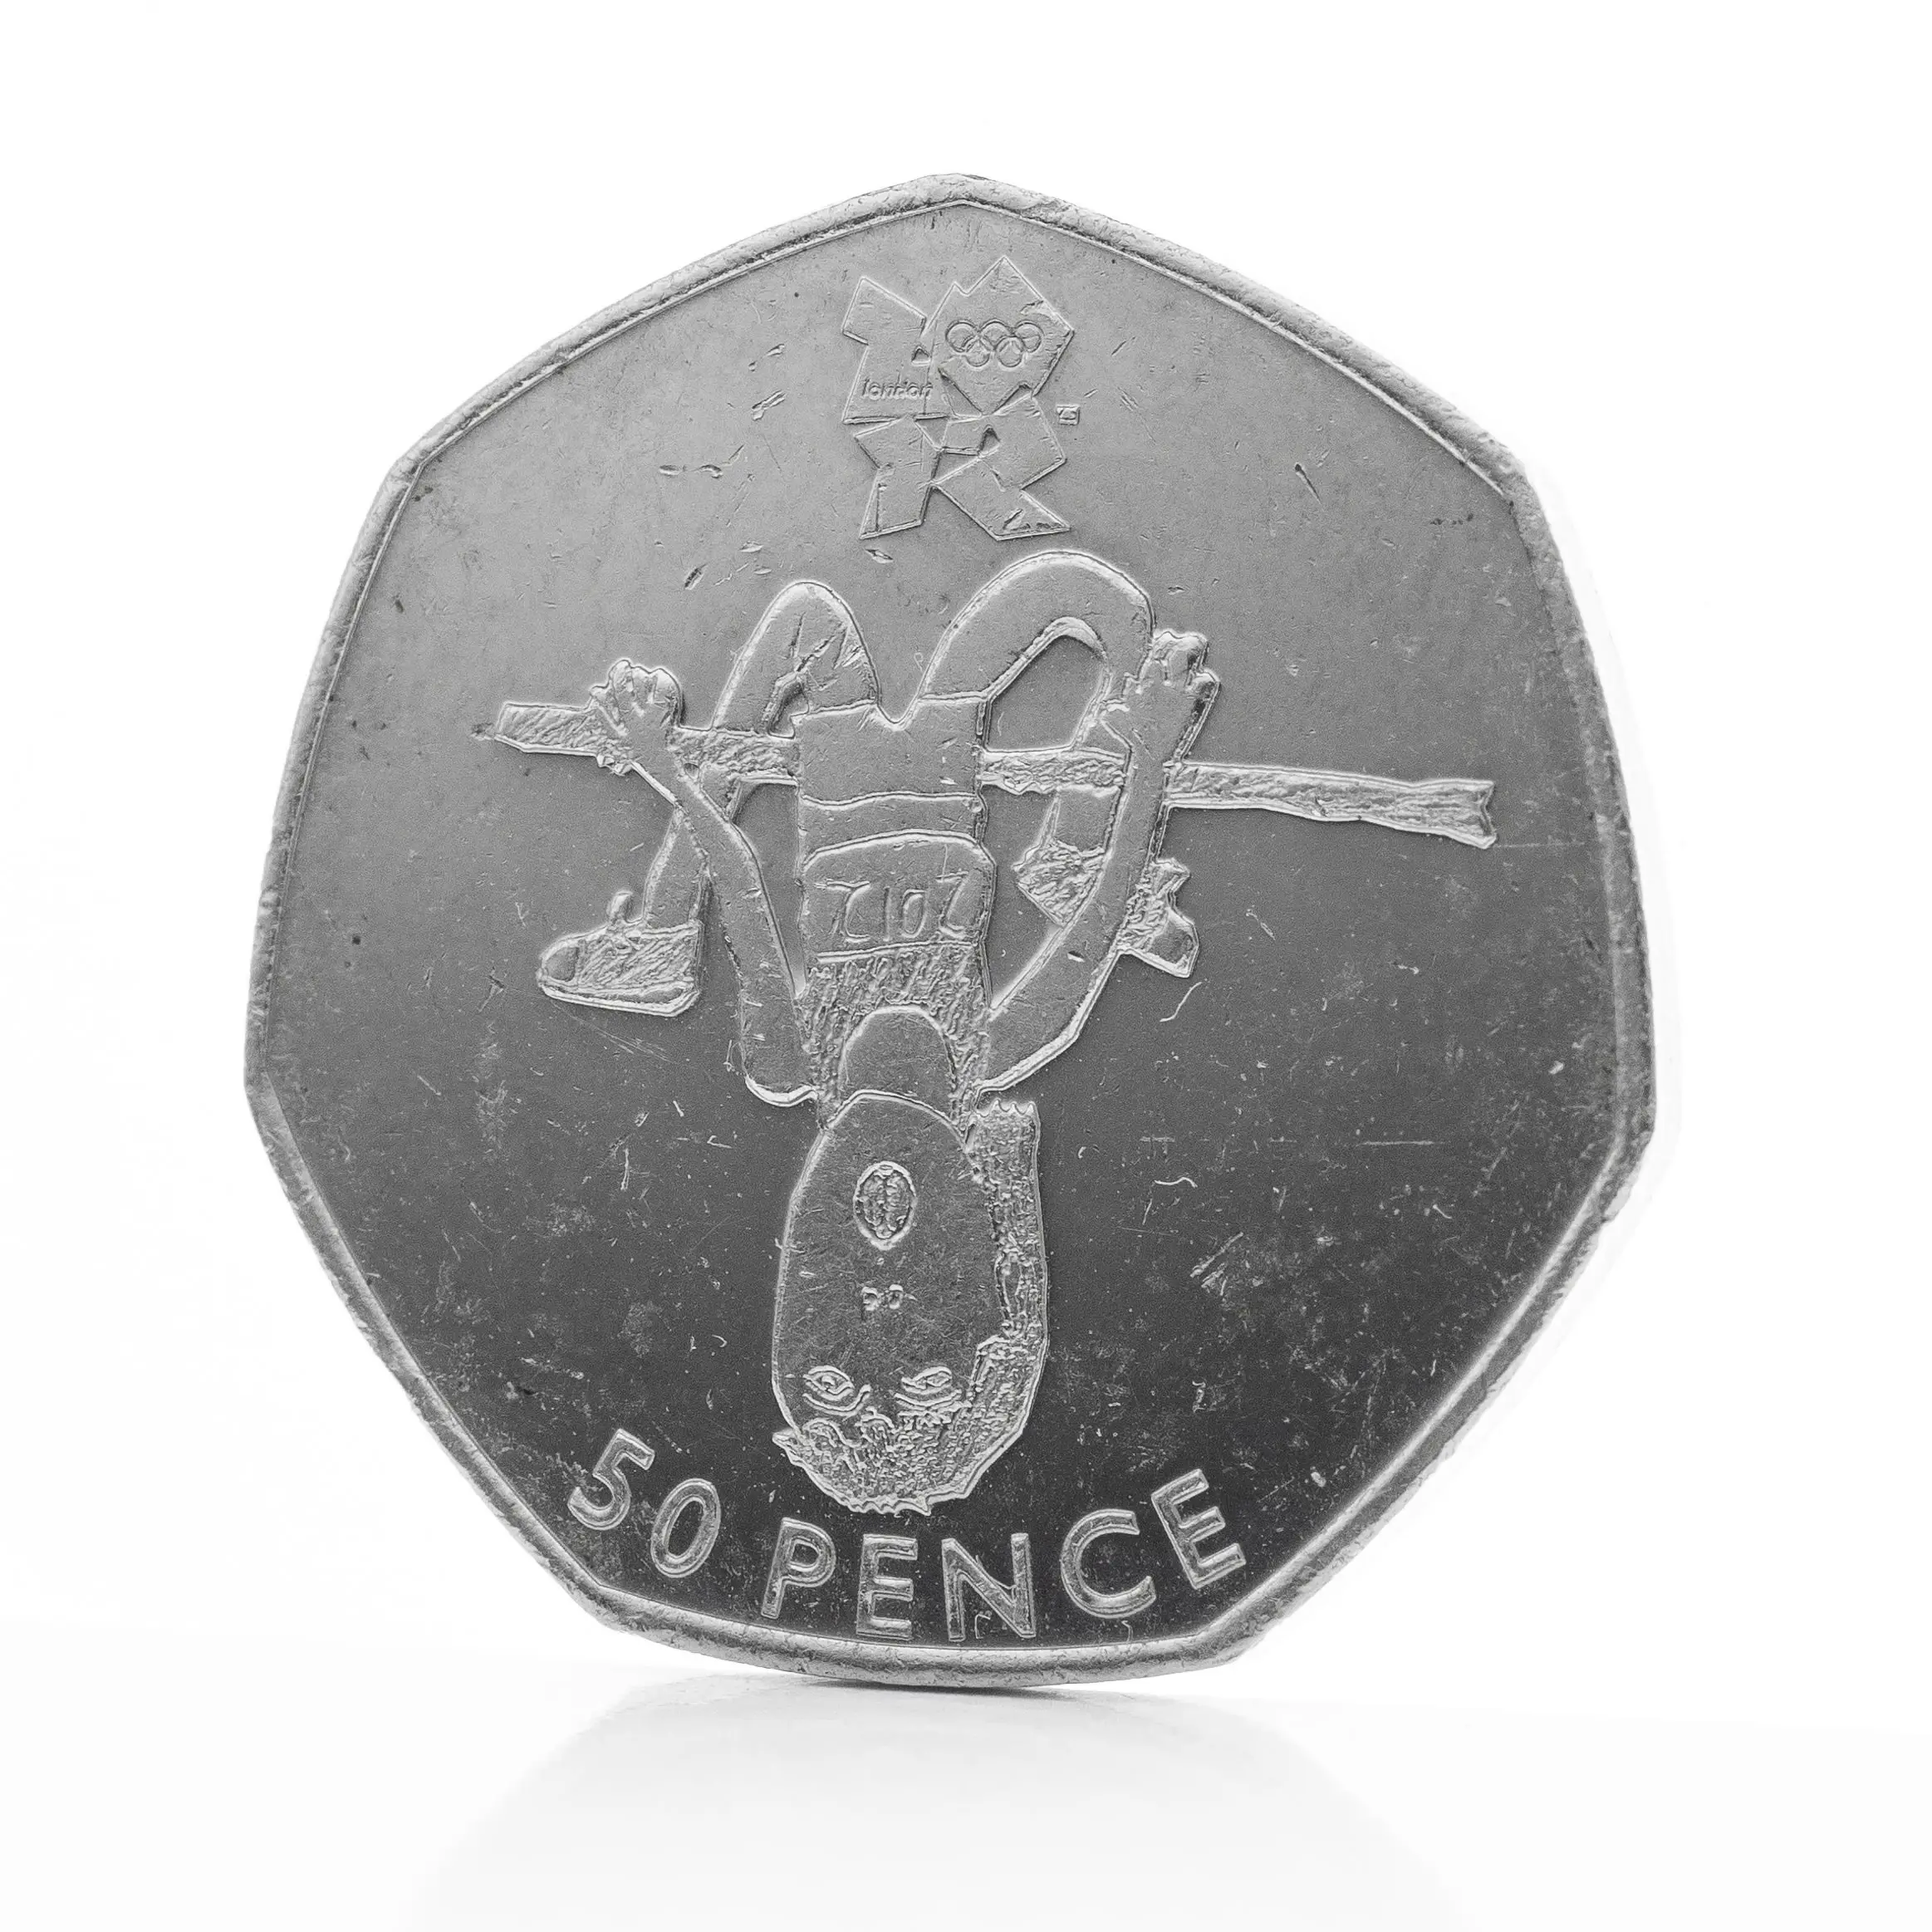 Athletics 50p coin